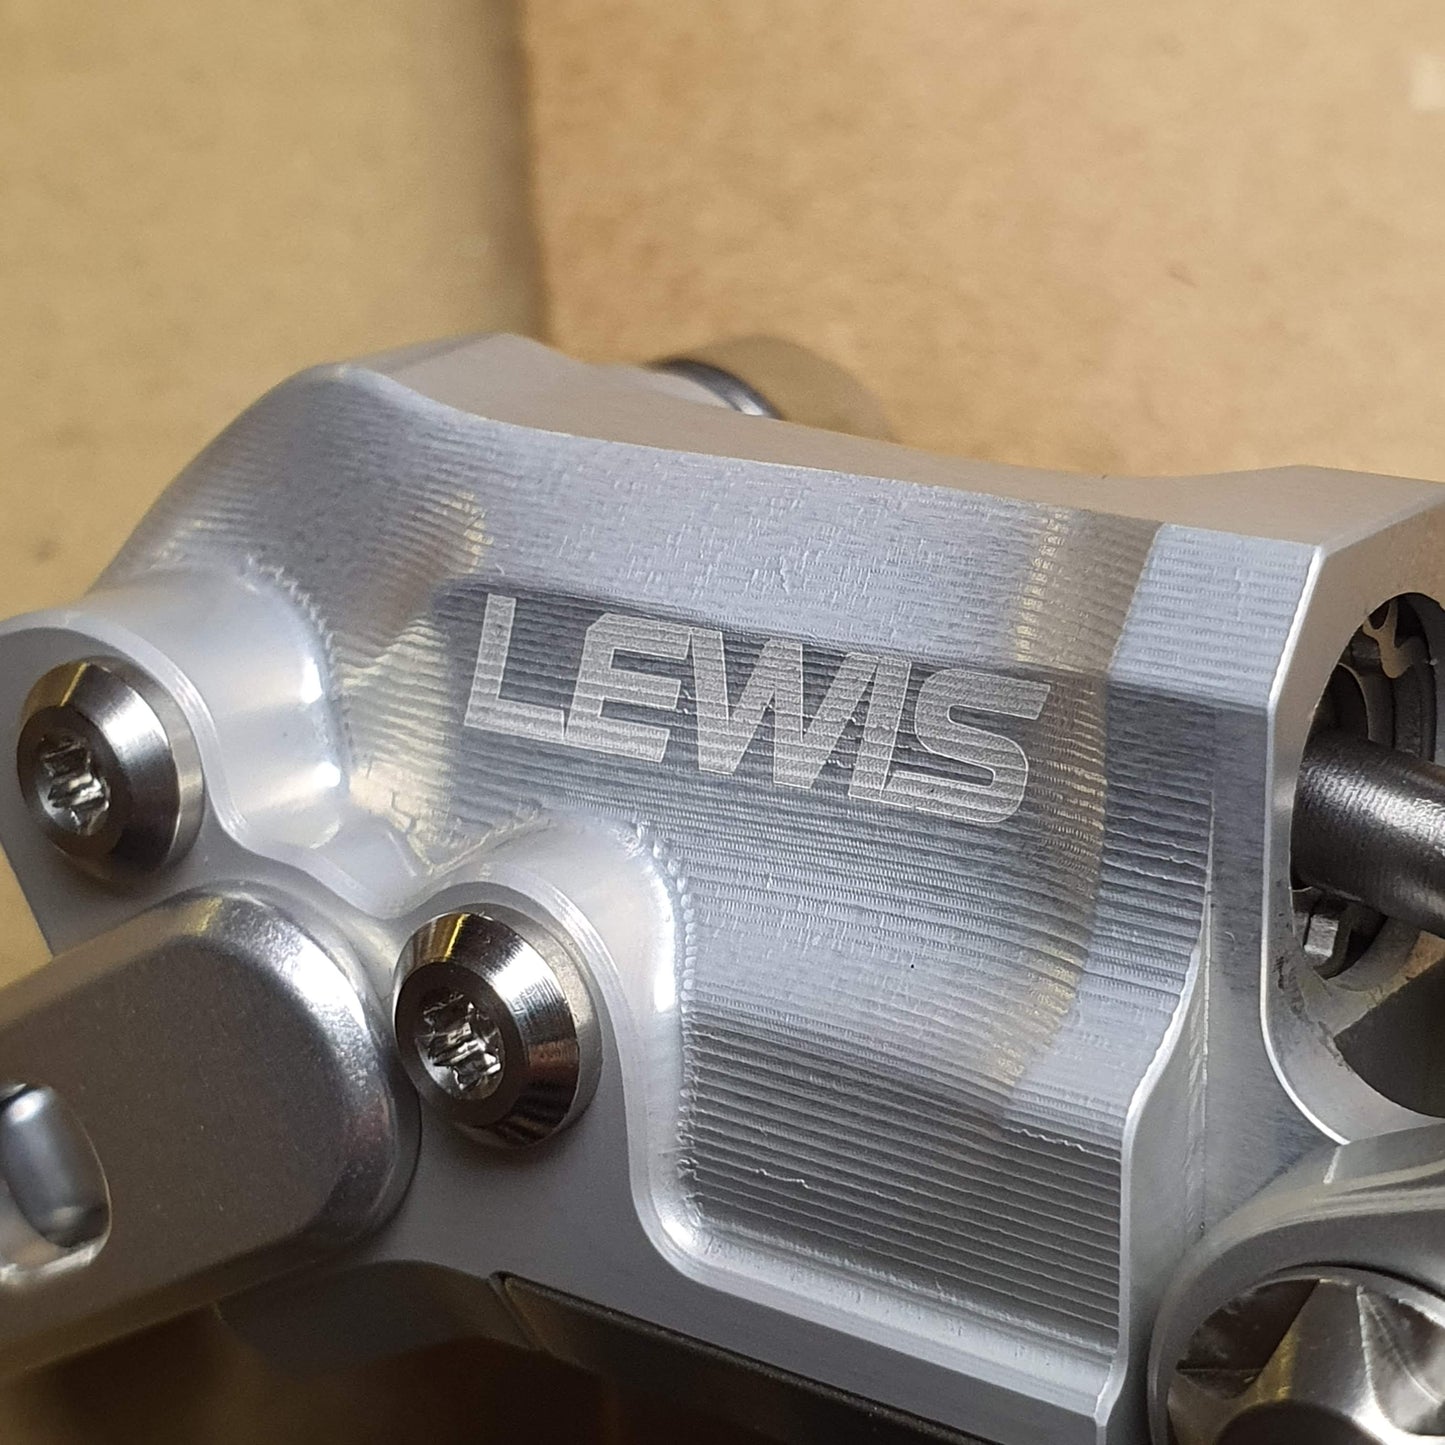 Lewis LV2 Doppelkolbenbremse für XC-Trial-Bike | Superleicht | Kostenfreier weltweiter Versand